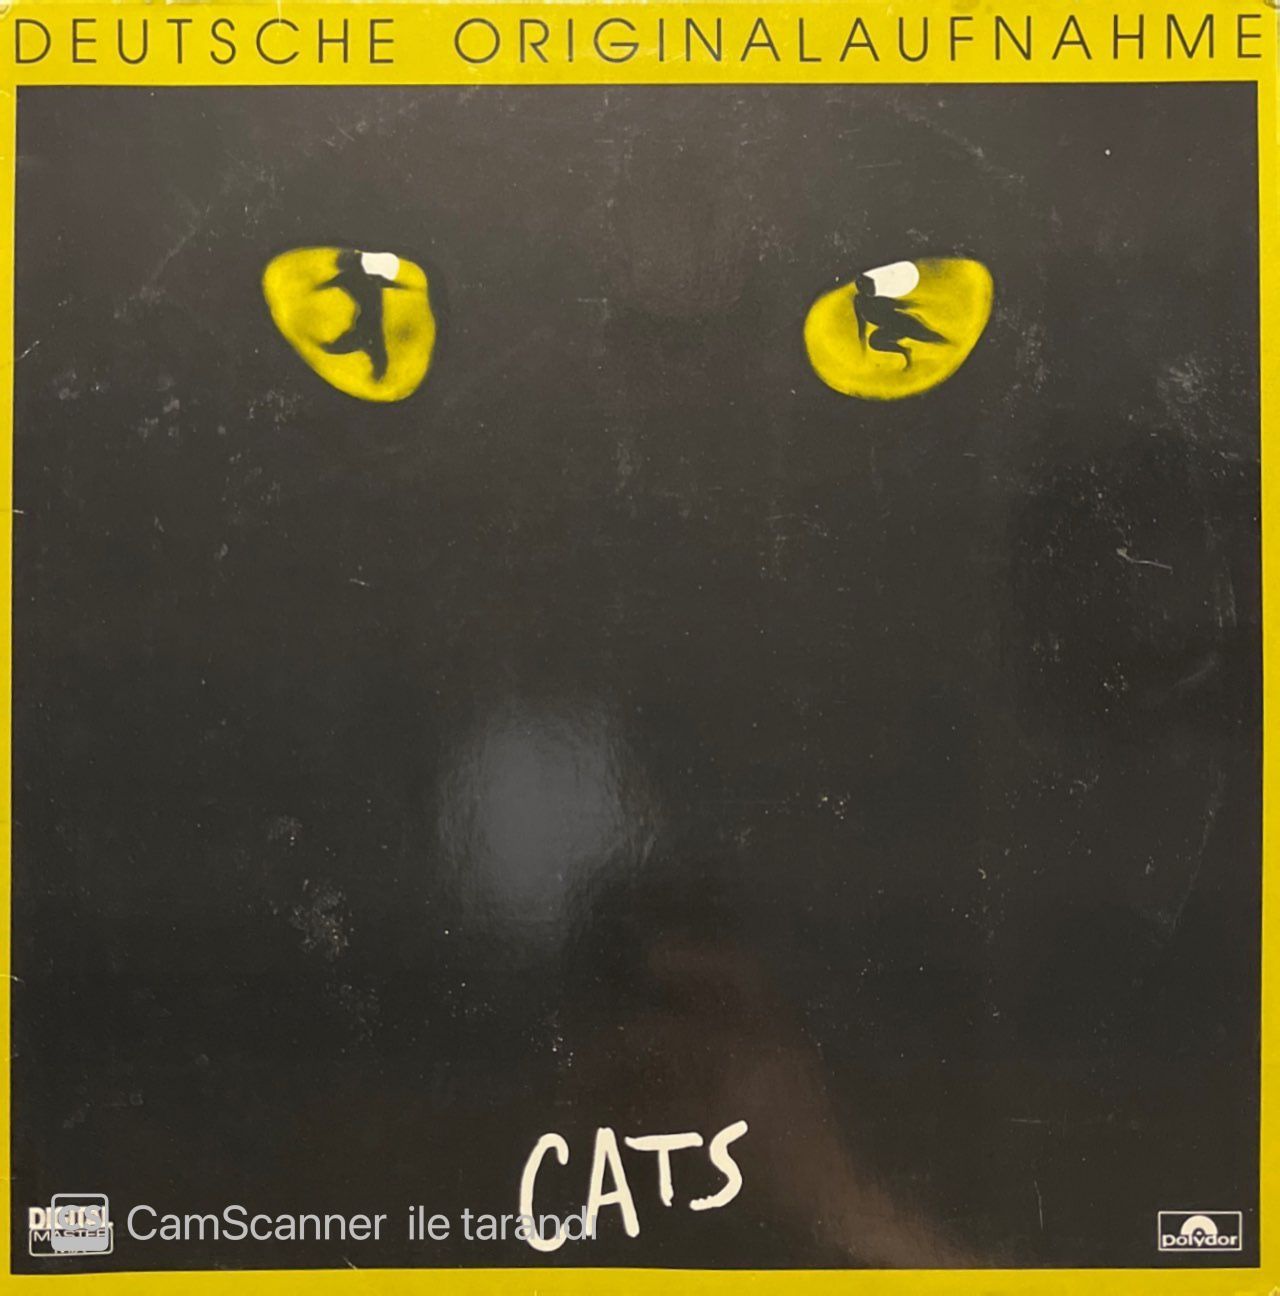 Cats Soundtrack LP Plak